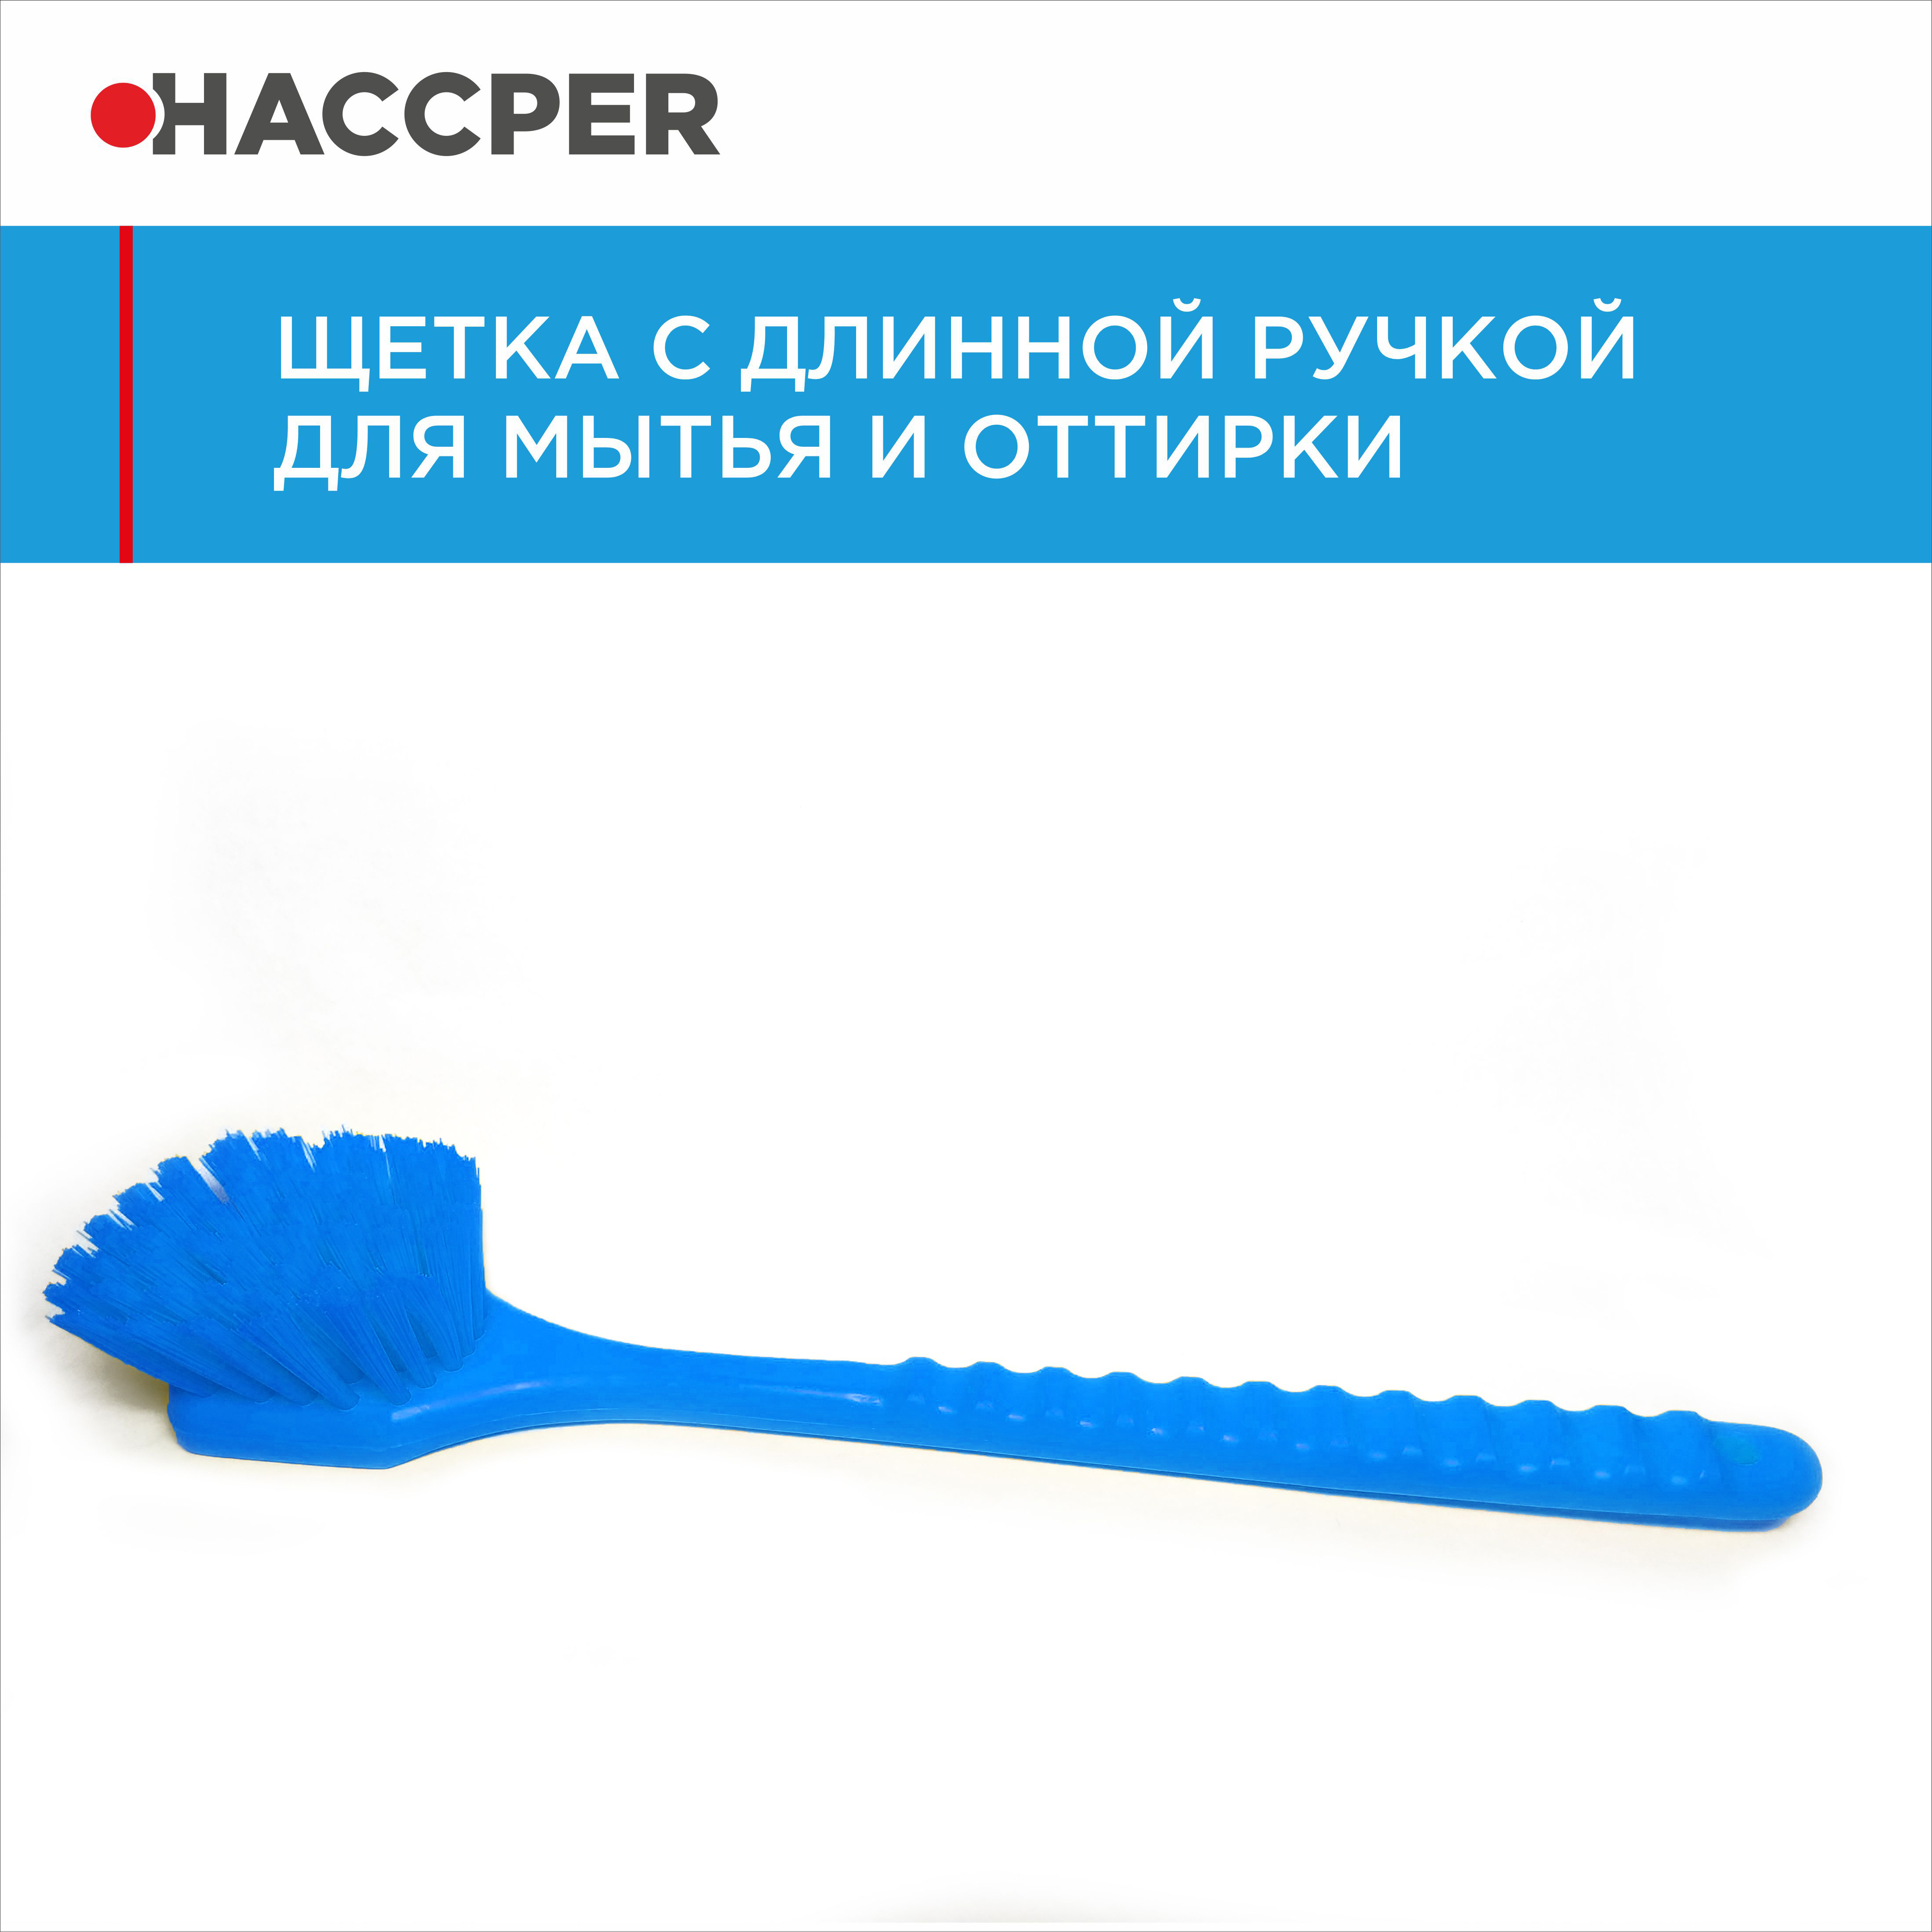 Щетка HACCPER с длинной ручкой, для мытья и оттирки, жесткая, 500 мм, синяя